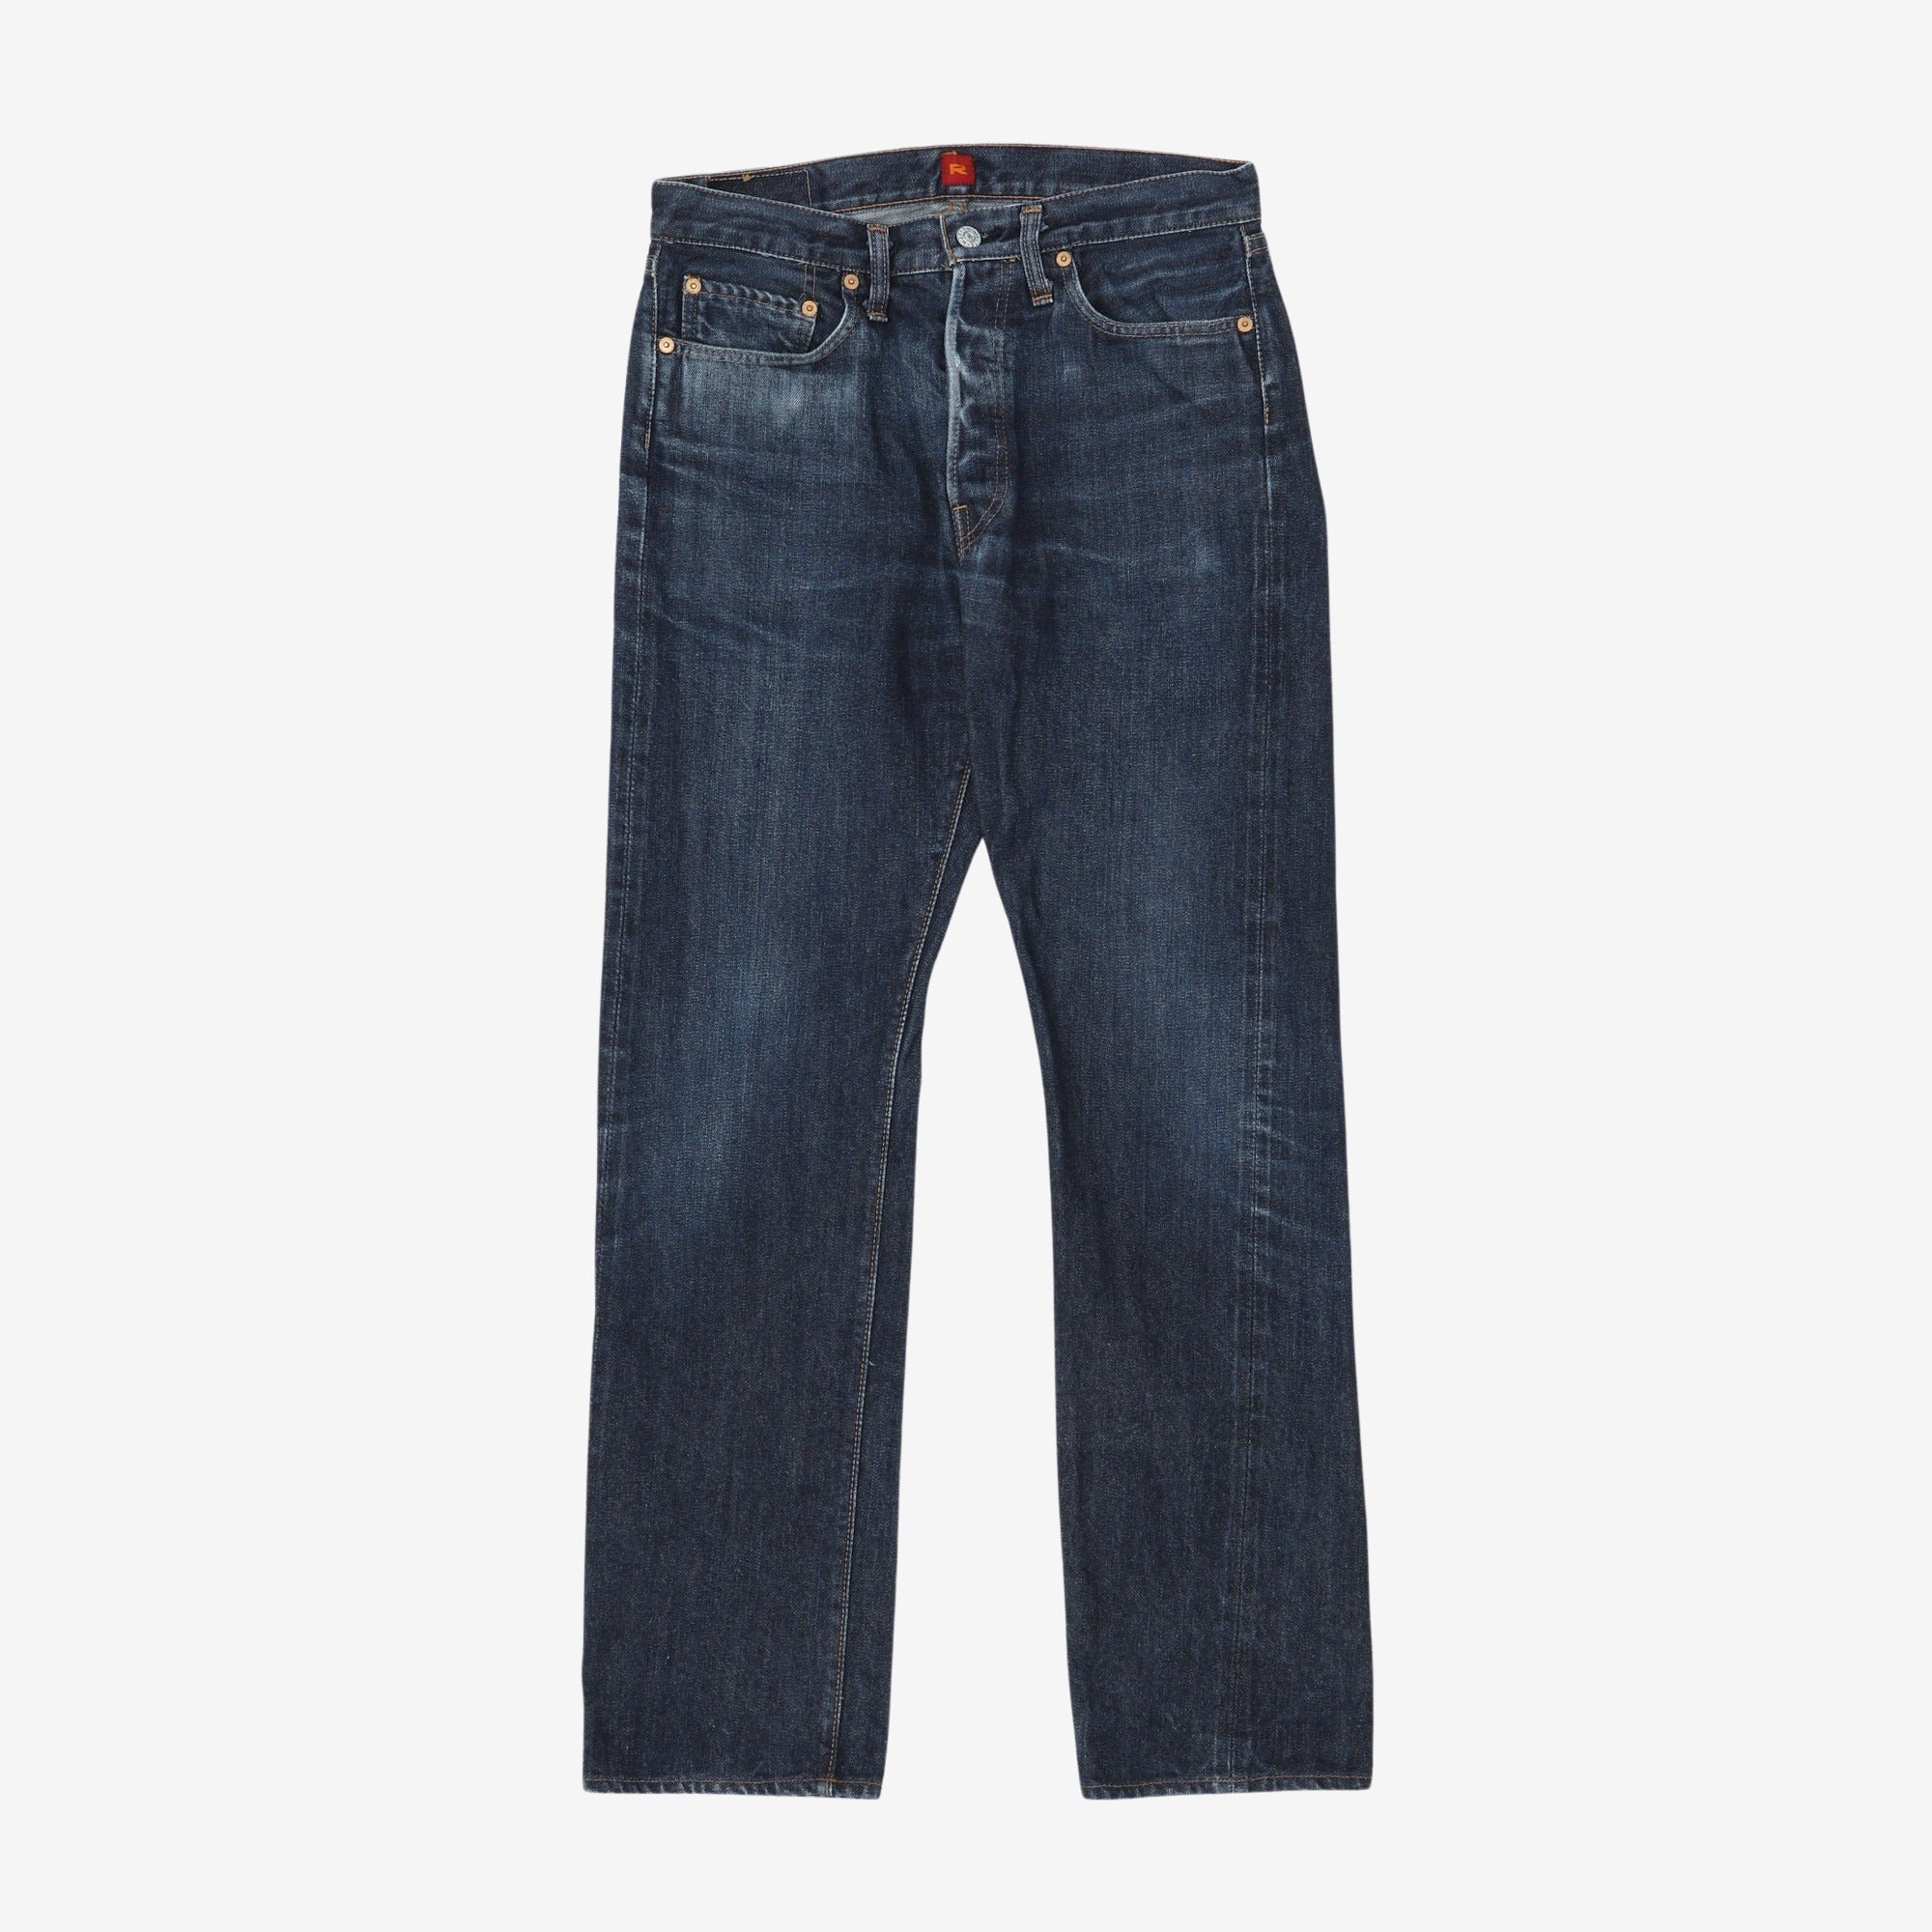 710 Denim Jeans (30W x 30L)